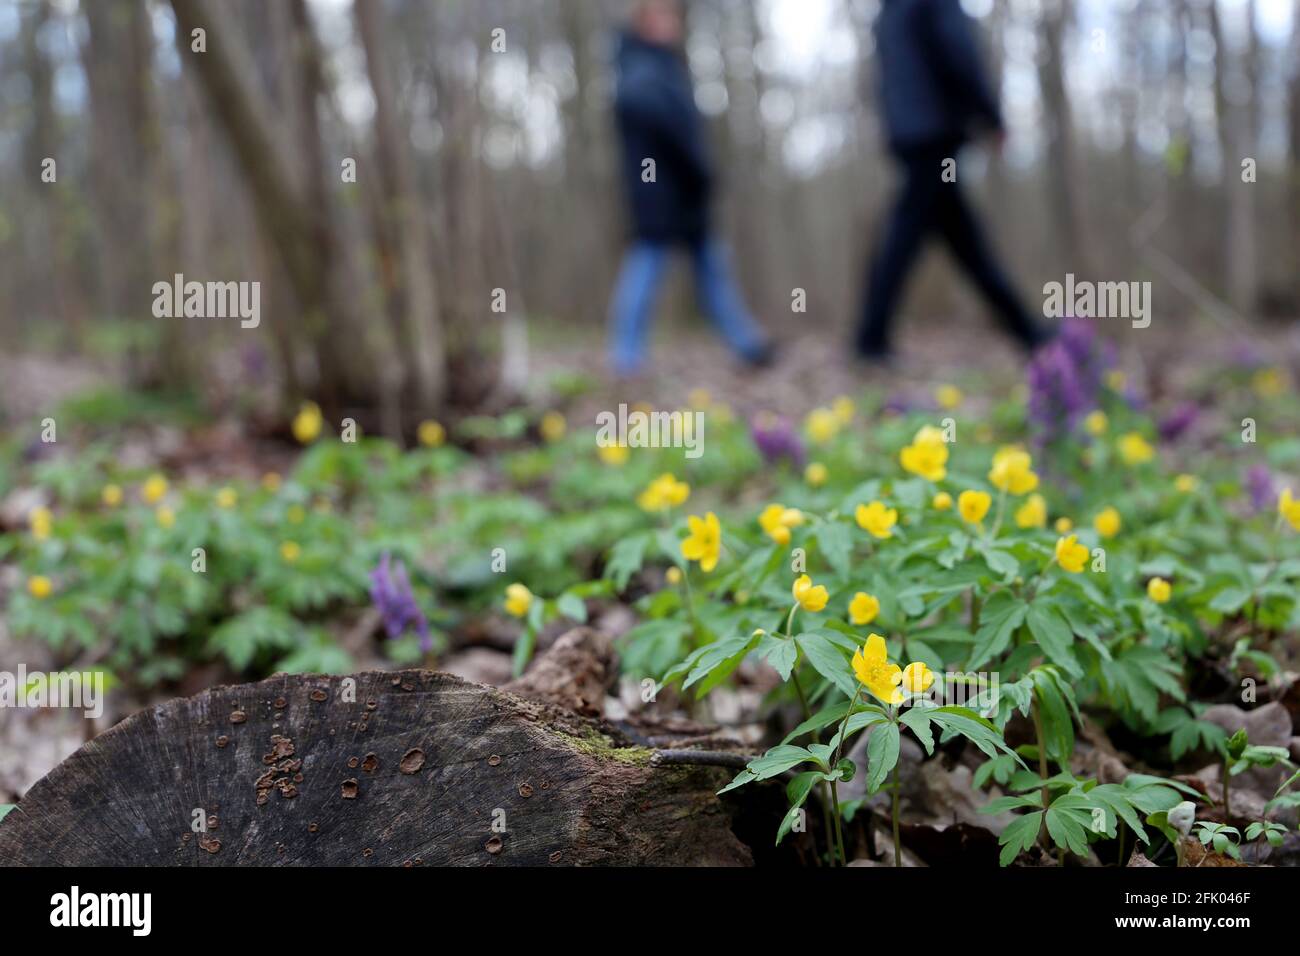 Frühlingsblumen in einem Wald, unverschämten Blick auf die Menschen zu Fuß. Gelbe Anemone-Butterblumen blühen in der Nähe des Pfades Stockfoto